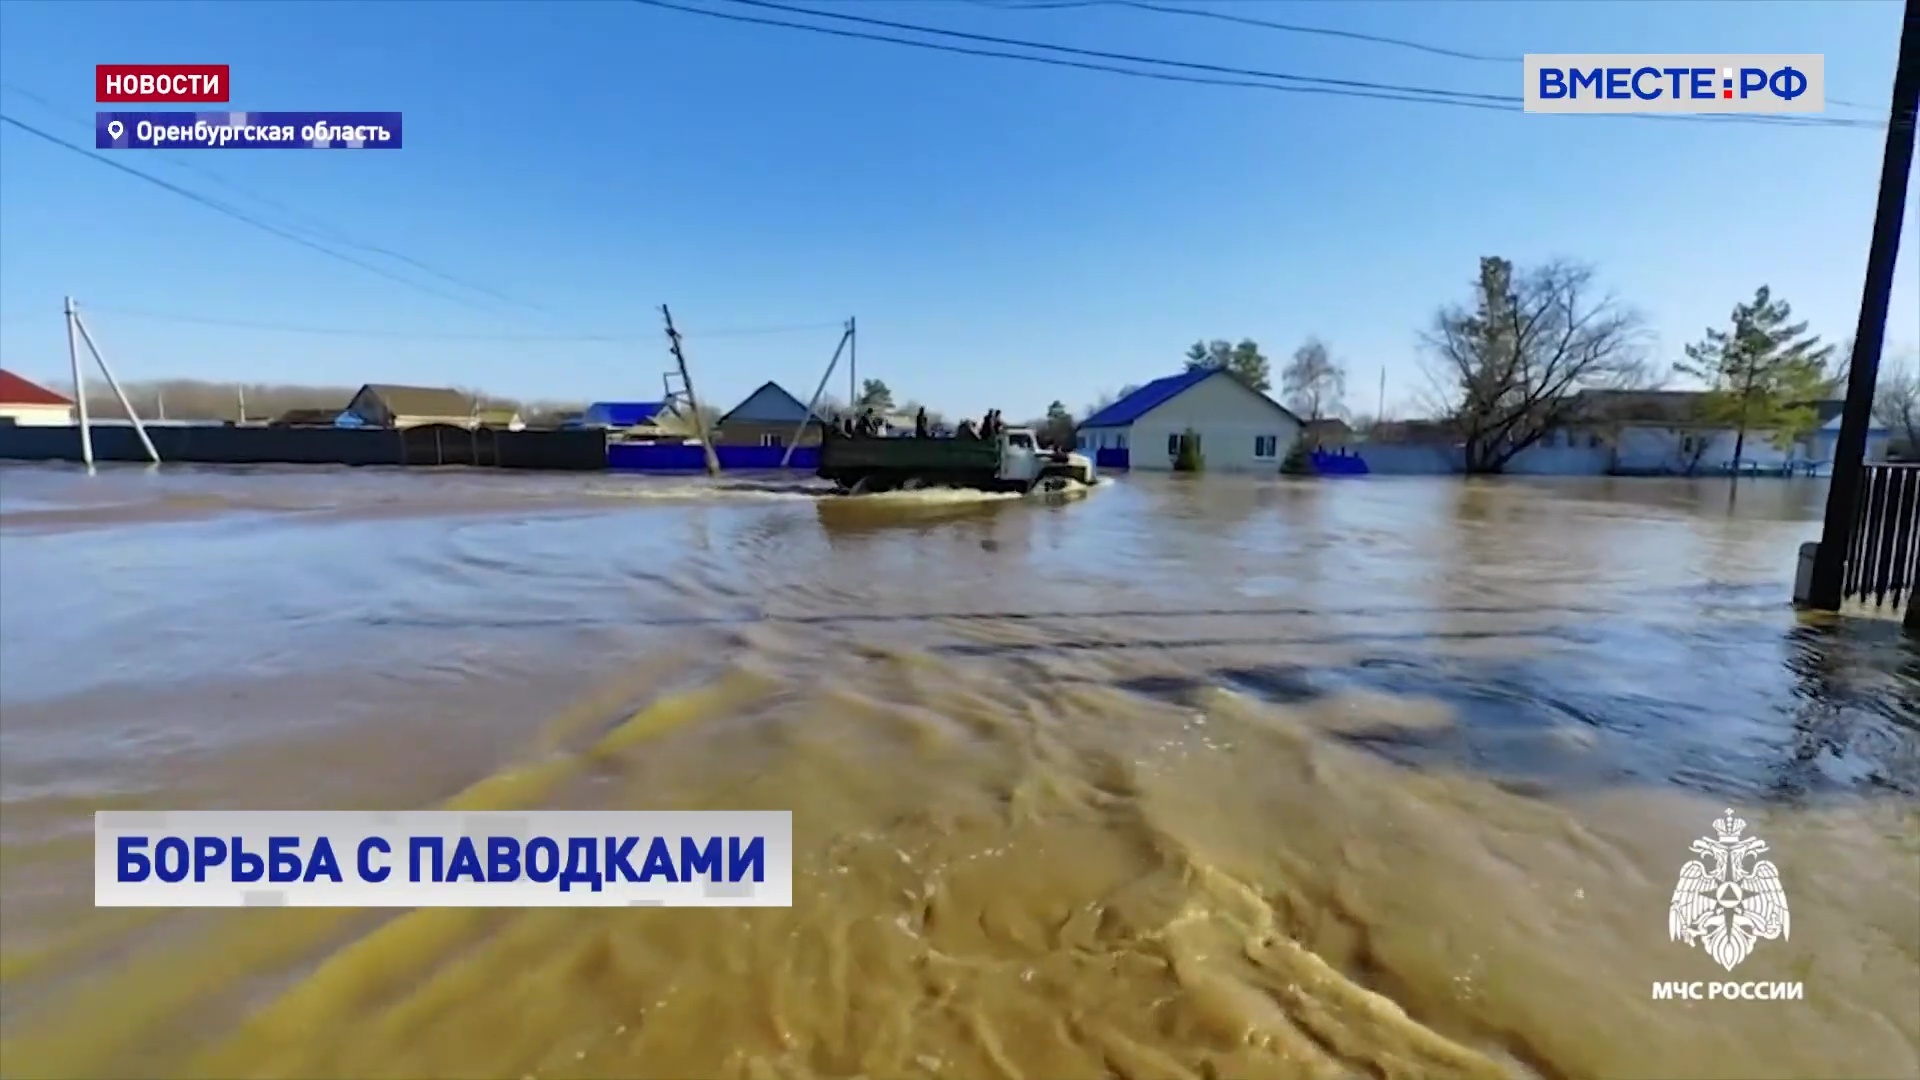 Более 3 тысяч специалистов ликвидируют последствия паводка в Оренбургской области